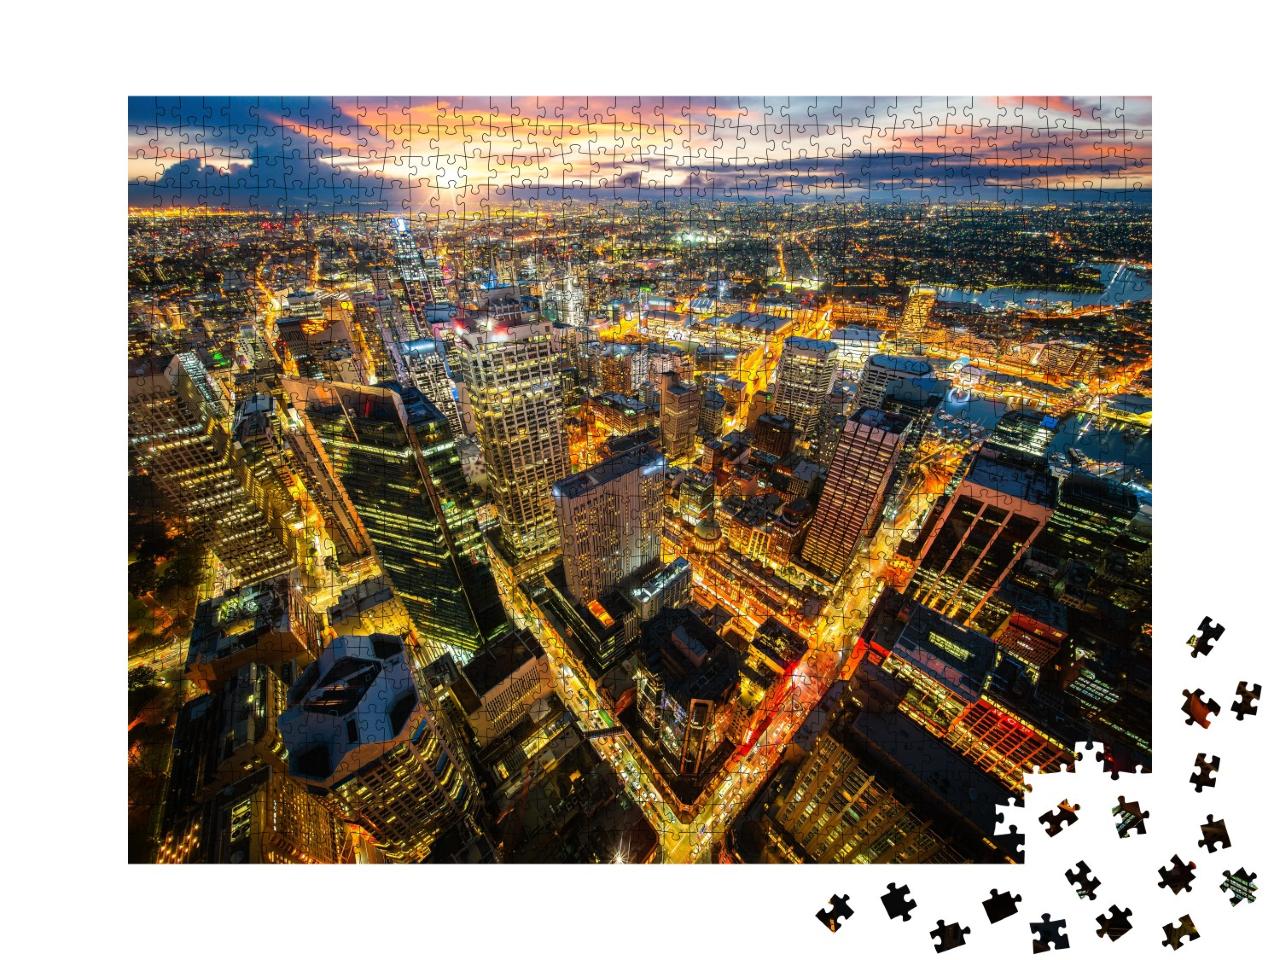 Puzzle 1000 Teile „Stadtbild von Sydney im Sonnenuntergang“